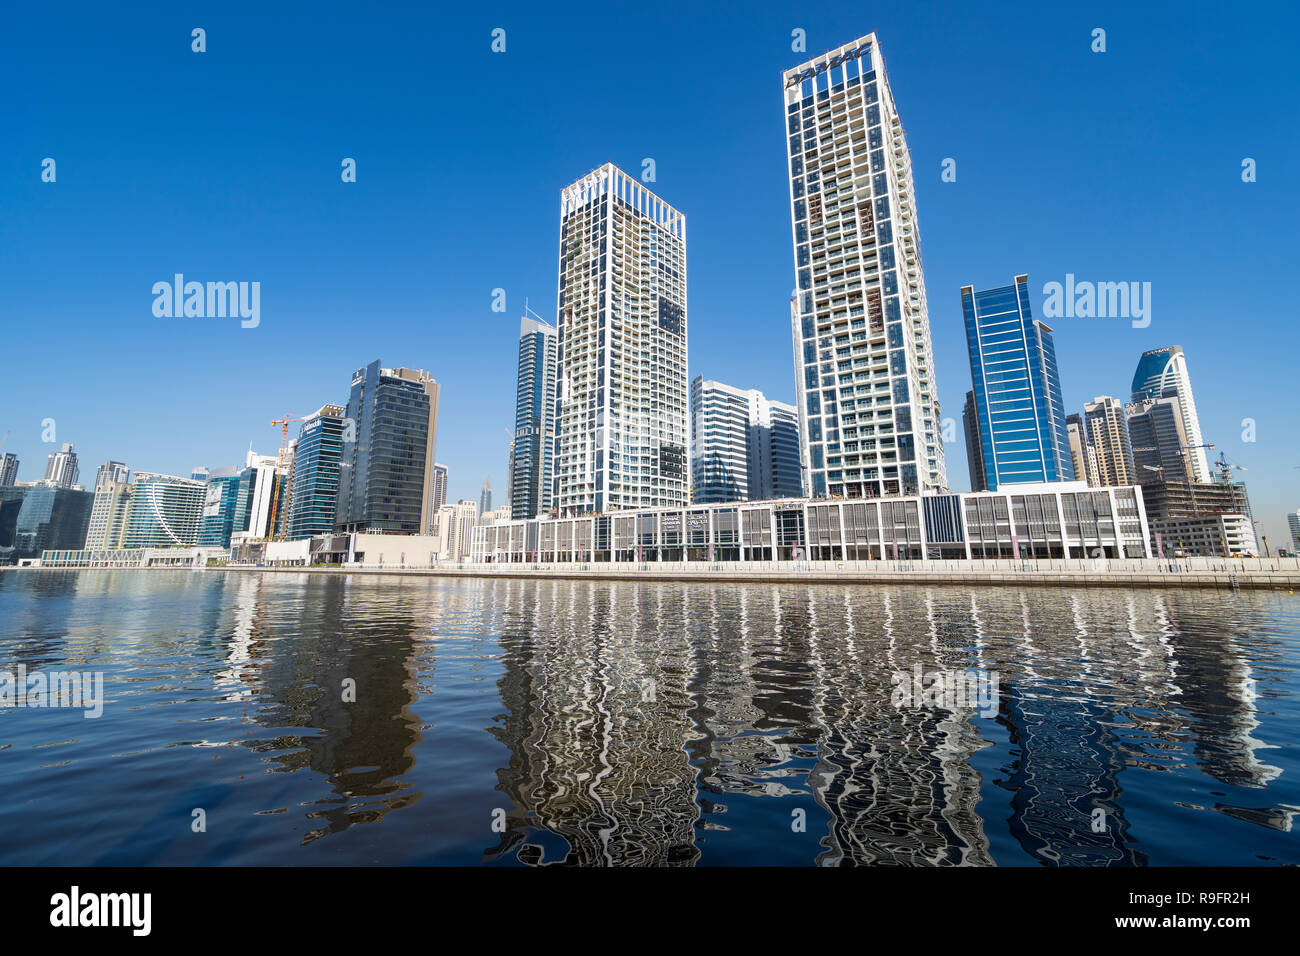 Vista diurna de modernos rascacielos de Business Bay y el Arroyo waterway en Dubai, Emiratos Árabes Unidos. Foto de stock